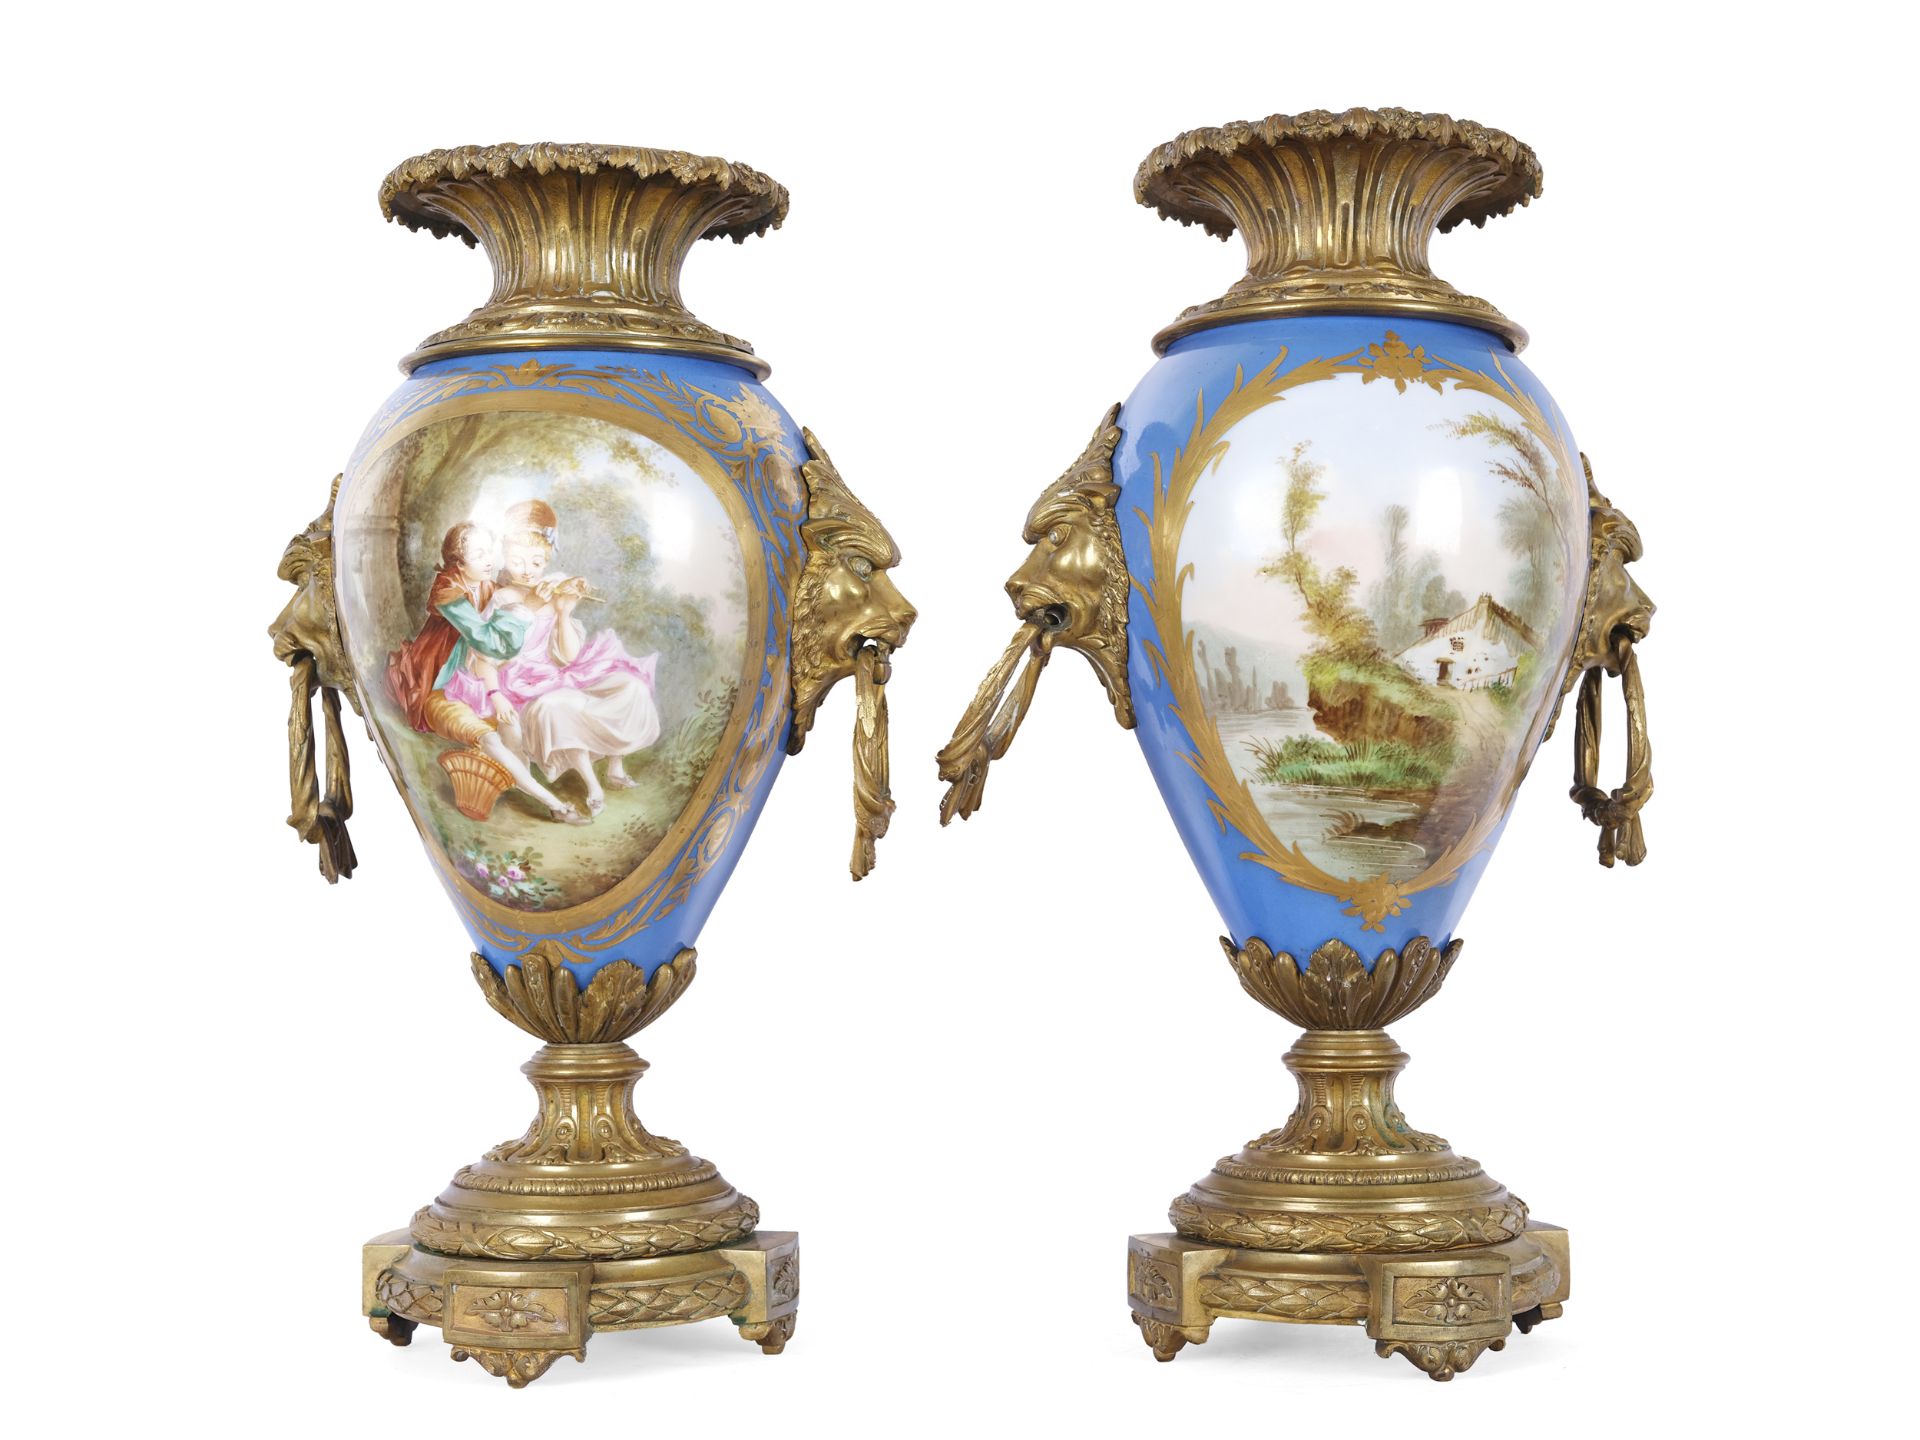 Paar Vasen mit Watteau-Szene, Sèvres, Paris, Mitte 19. Jahrhundert - Bild 3 aus 3